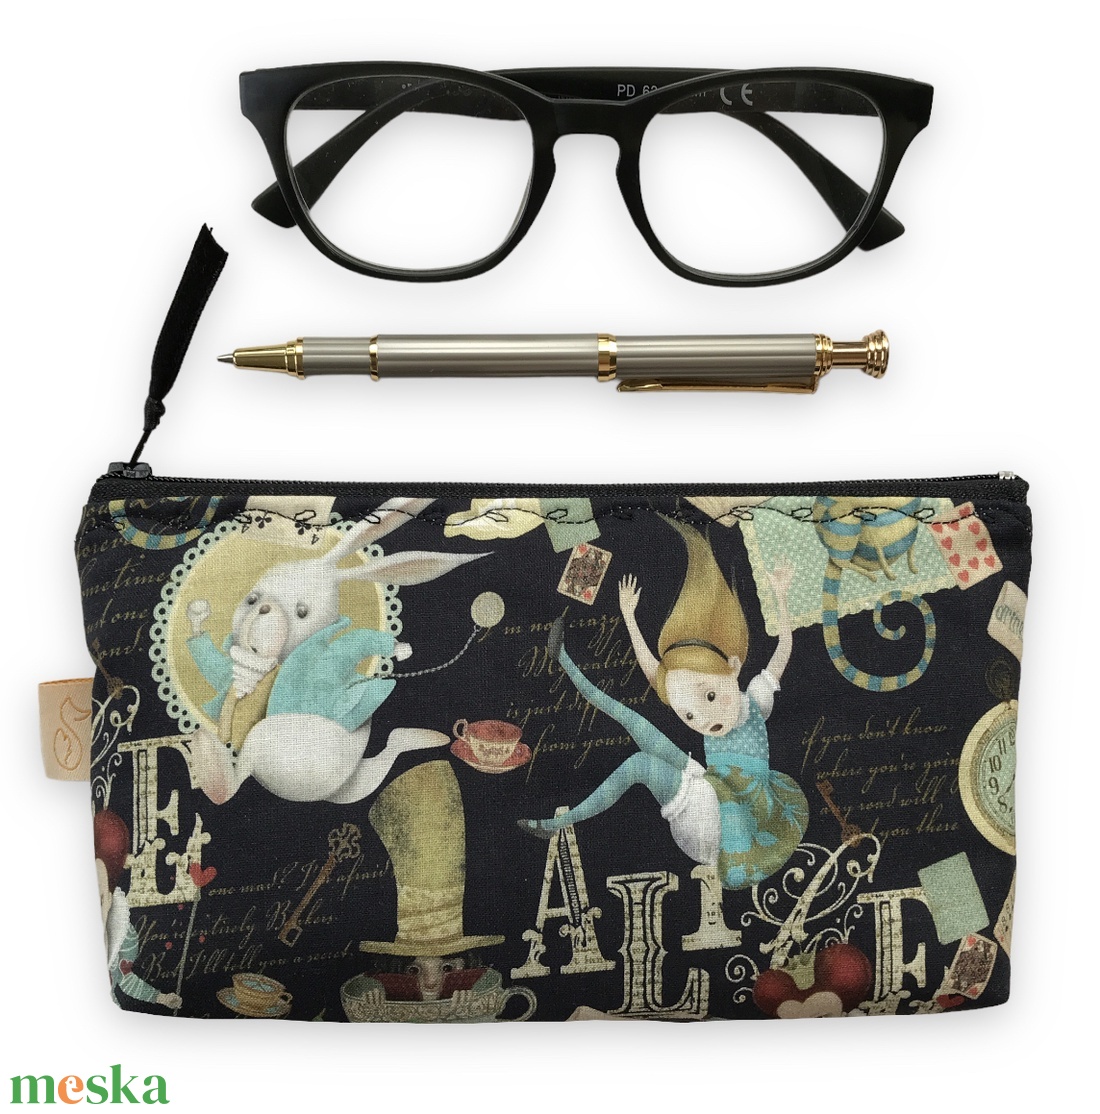 Alice csodaországban mintás tolltartó neszesszer, szemüvegtok vagy mobiltok  - Artiroka design - táska & tok - neszesszer - Meska.hu